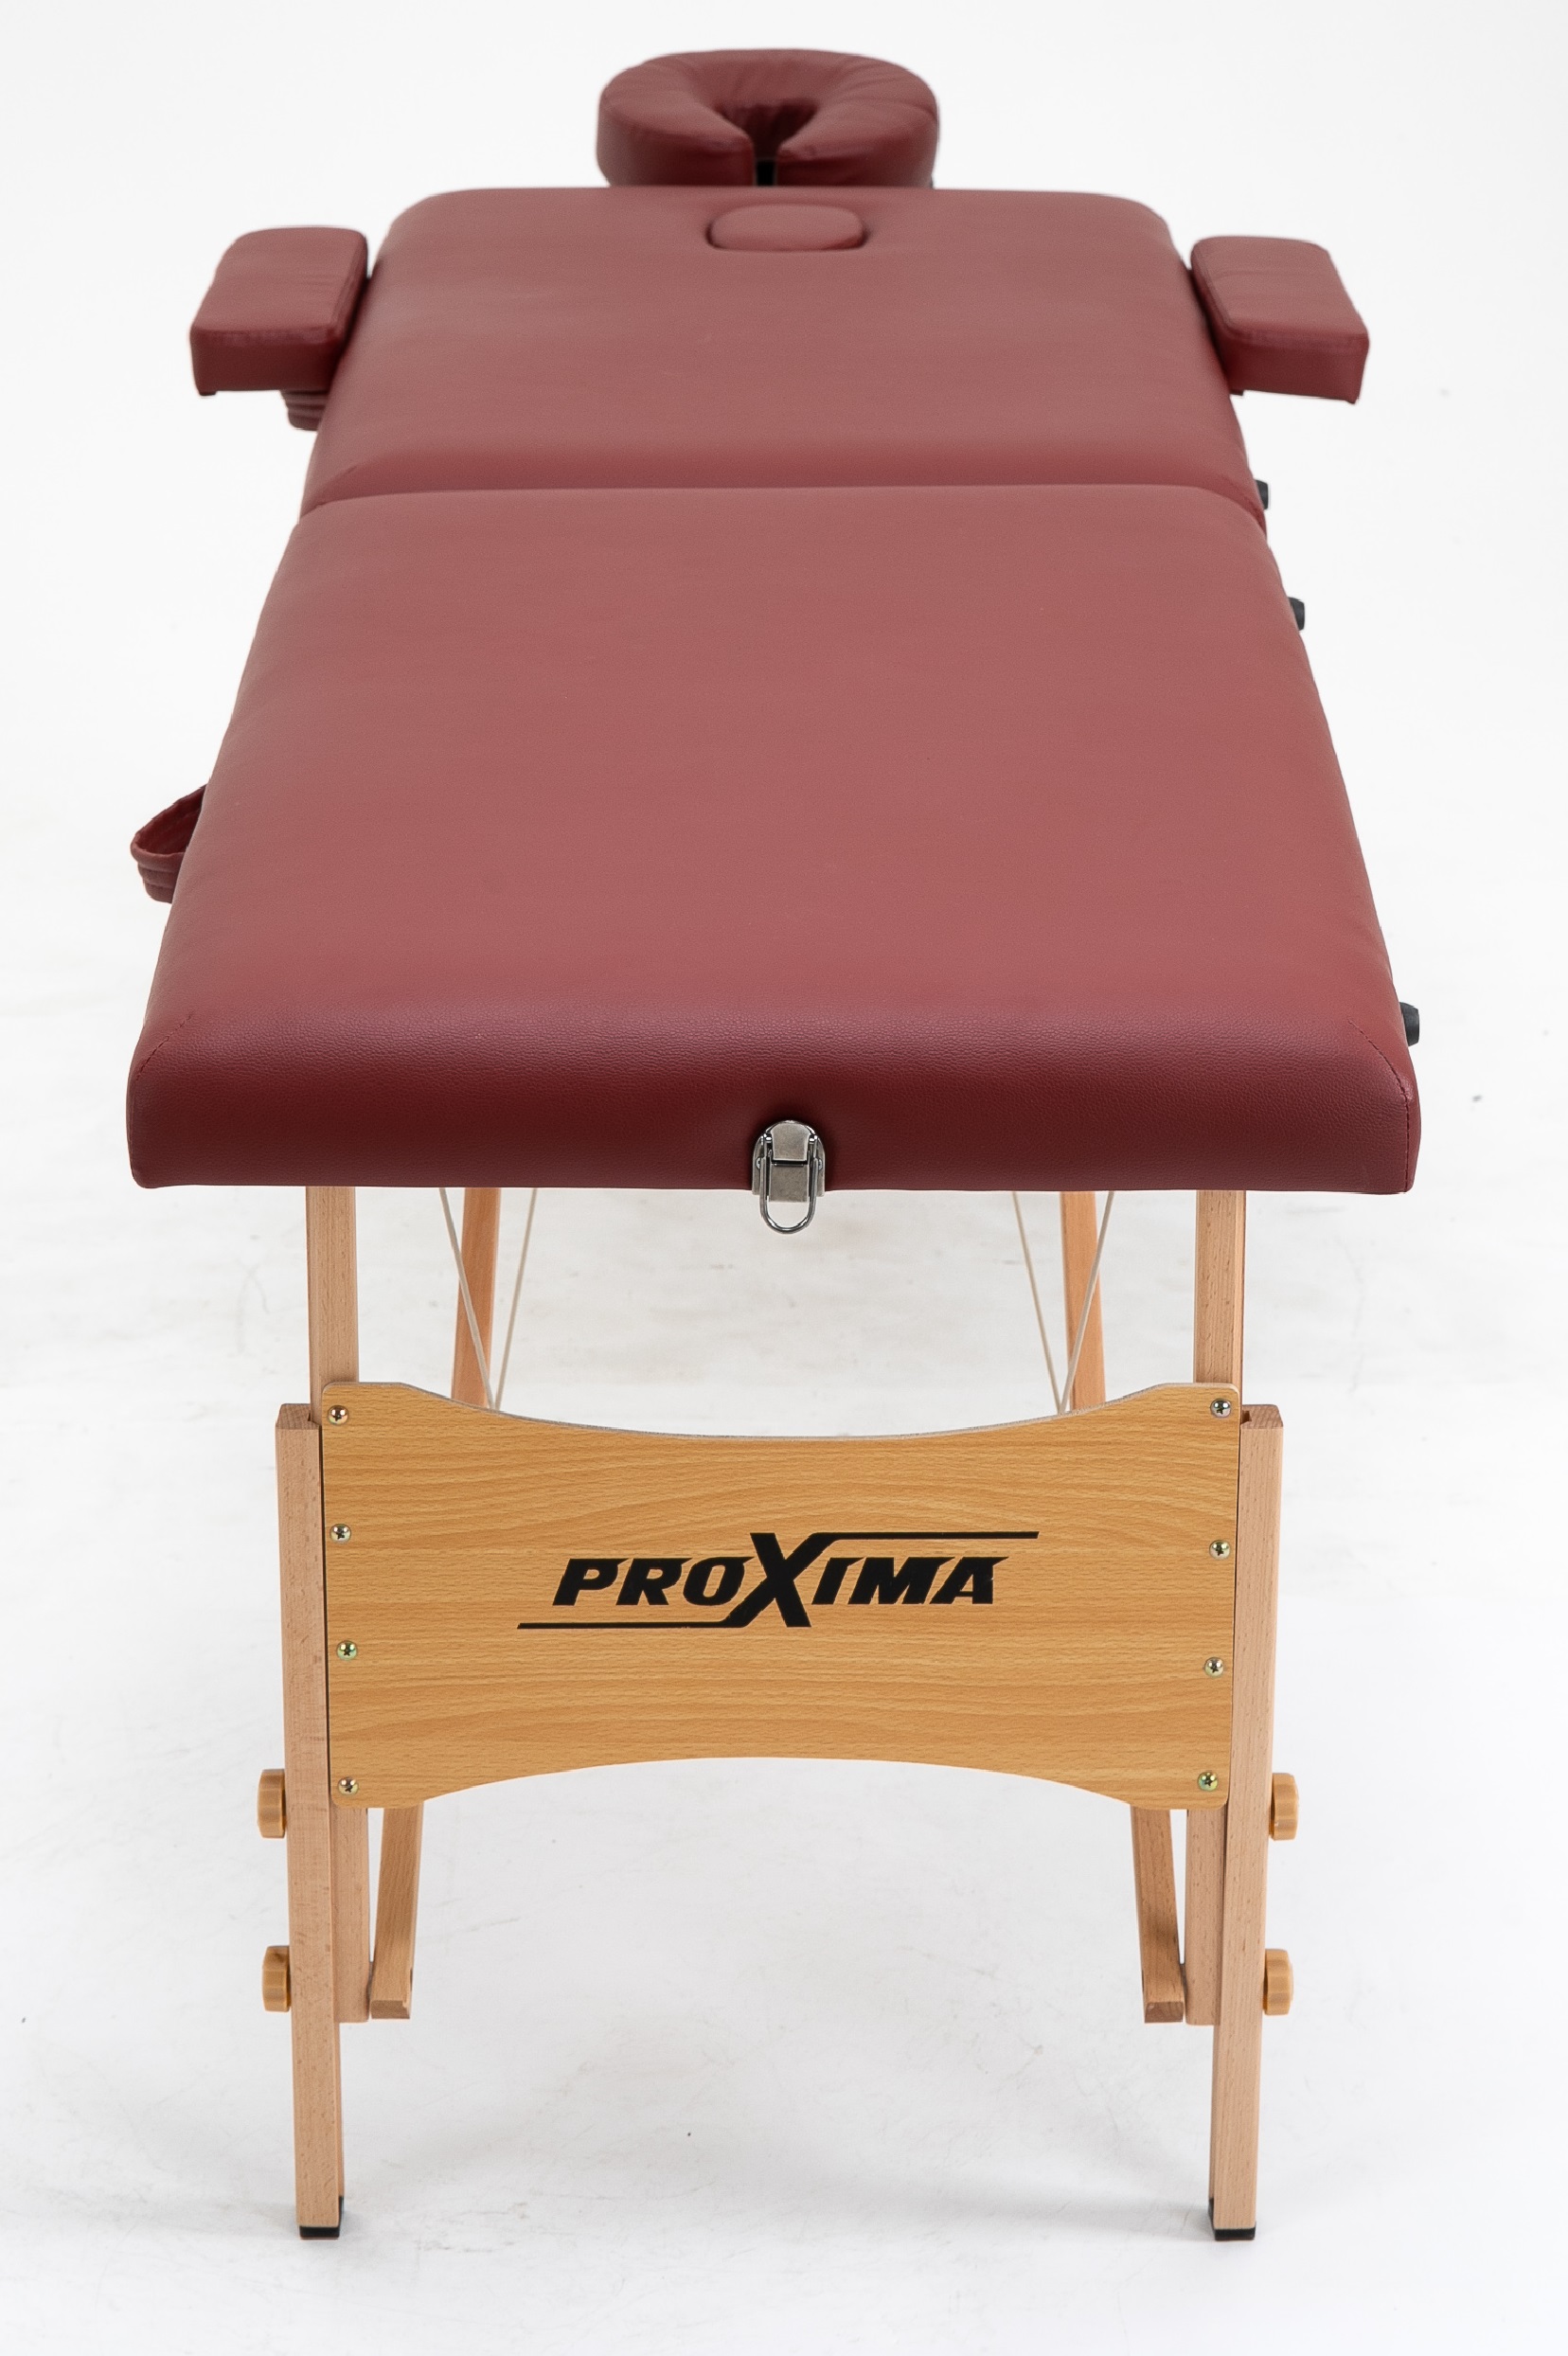 Складной массажный стол Proxima Parma 60